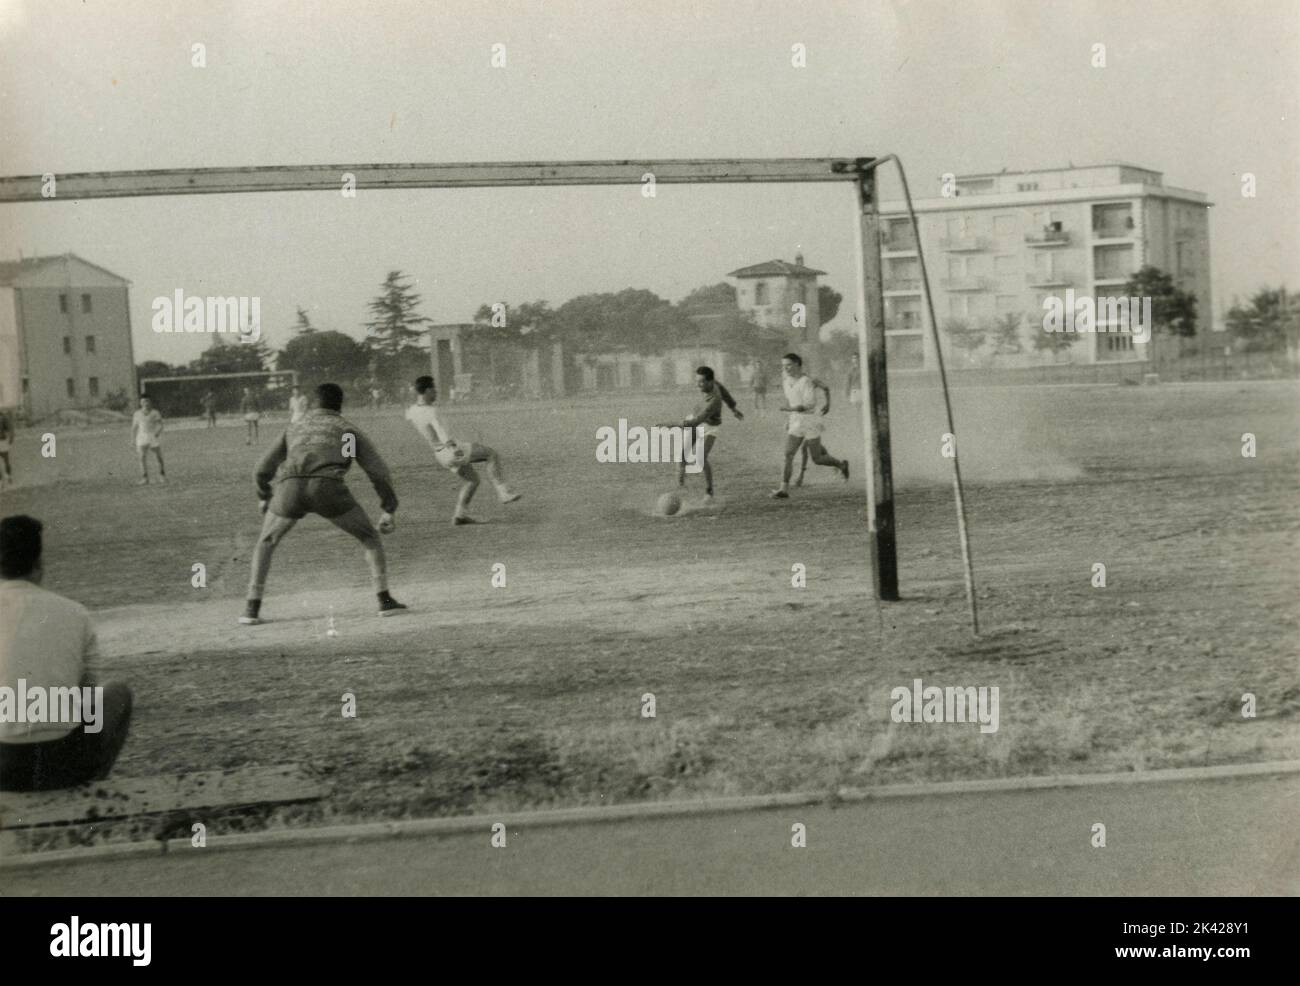 Partita di calcio amateurica in un campo polveroso, Italia 1950s Foto Stock